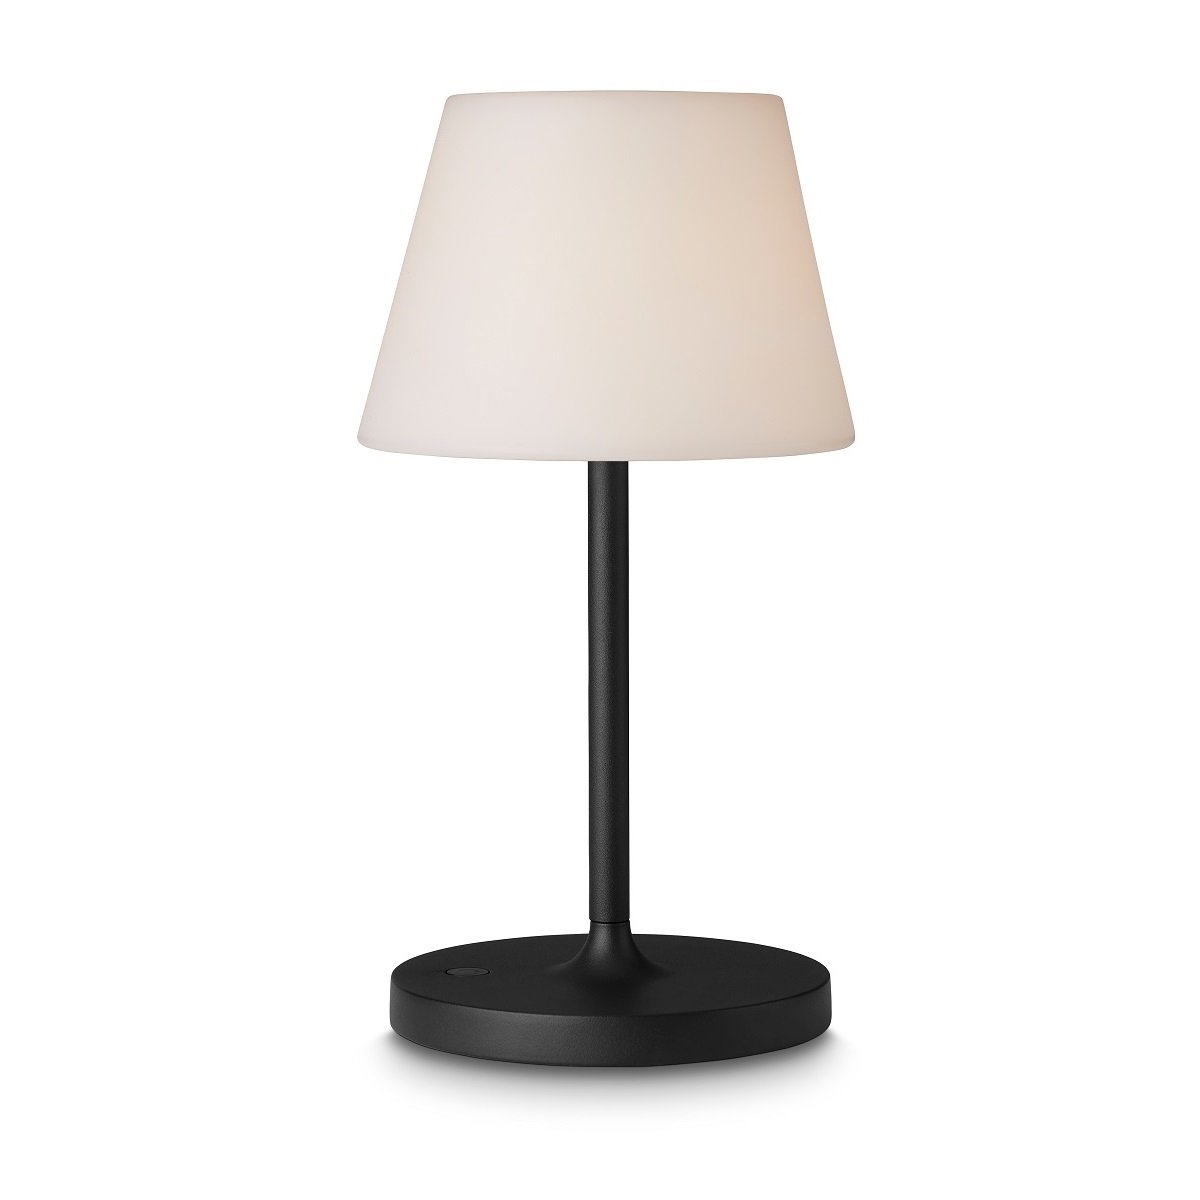 Halo Design 800933 Tischleuchte New Northern 15cm schwarz matt --> Leuchten  & Lampen online kaufen im Shop | Tischlampen